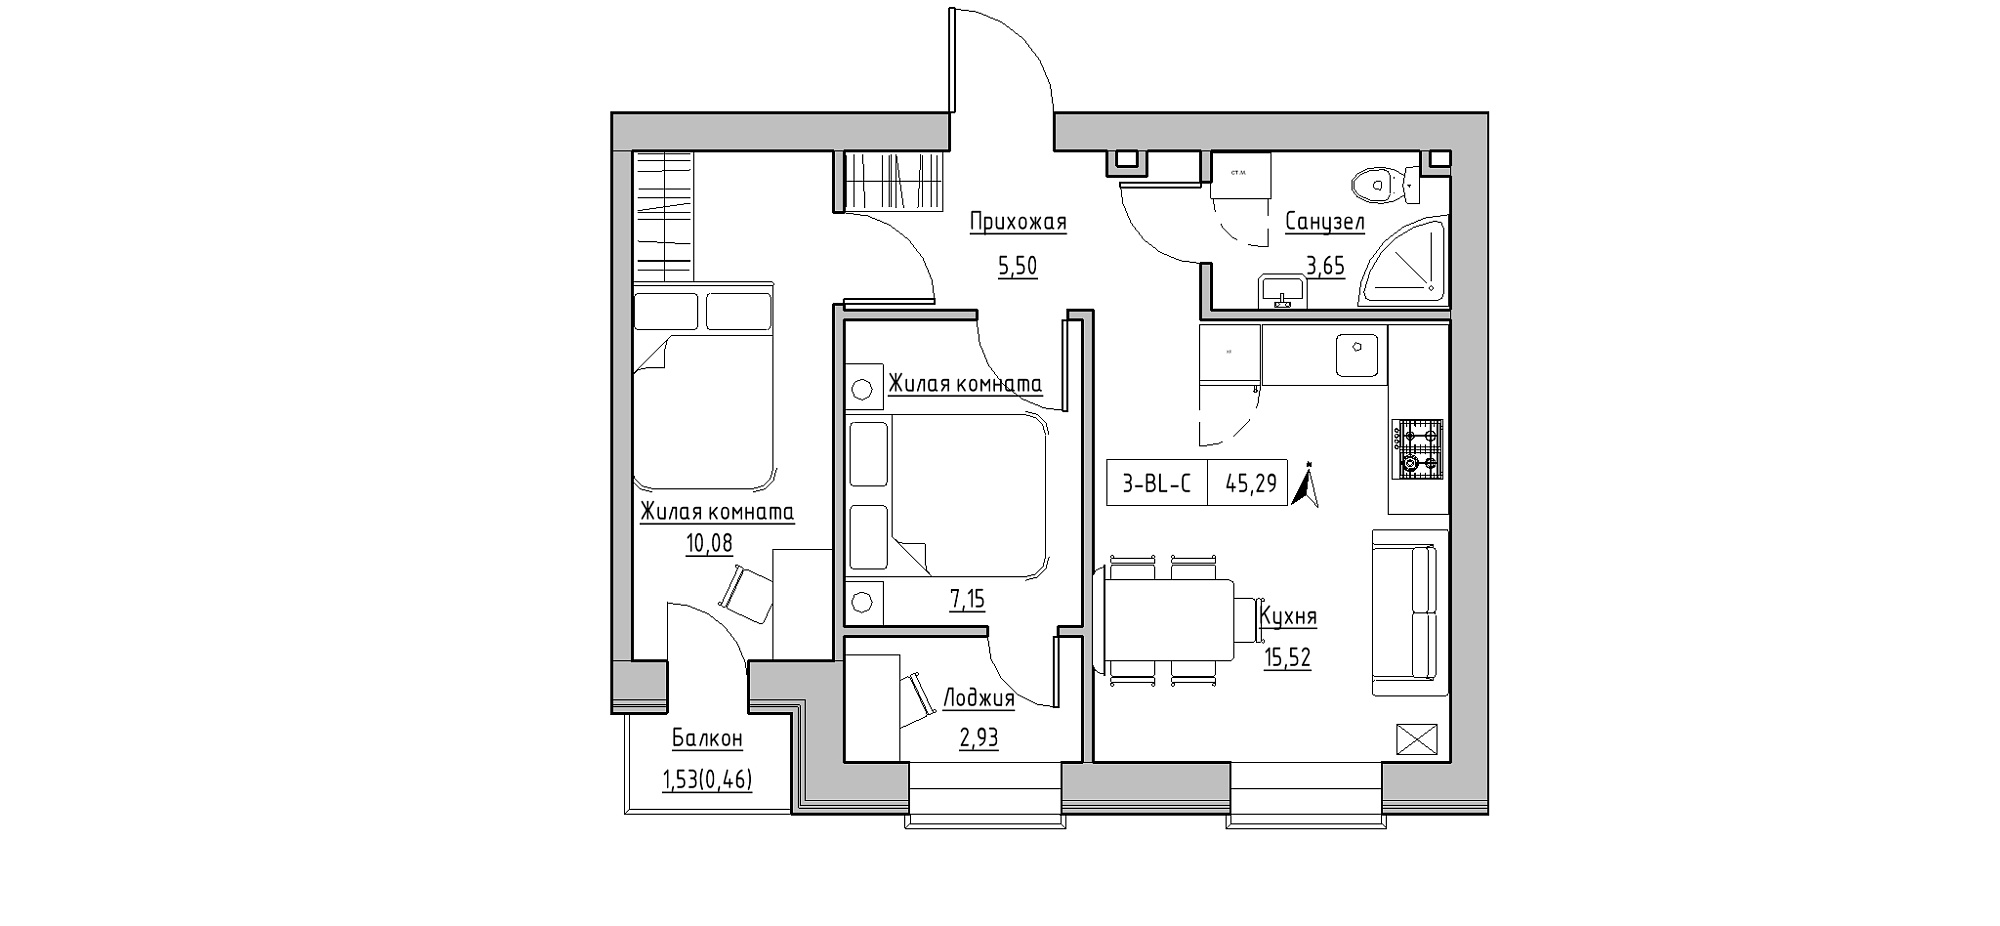 Планування 2-к квартира площею 45.29м2, KS-020-04/0008.